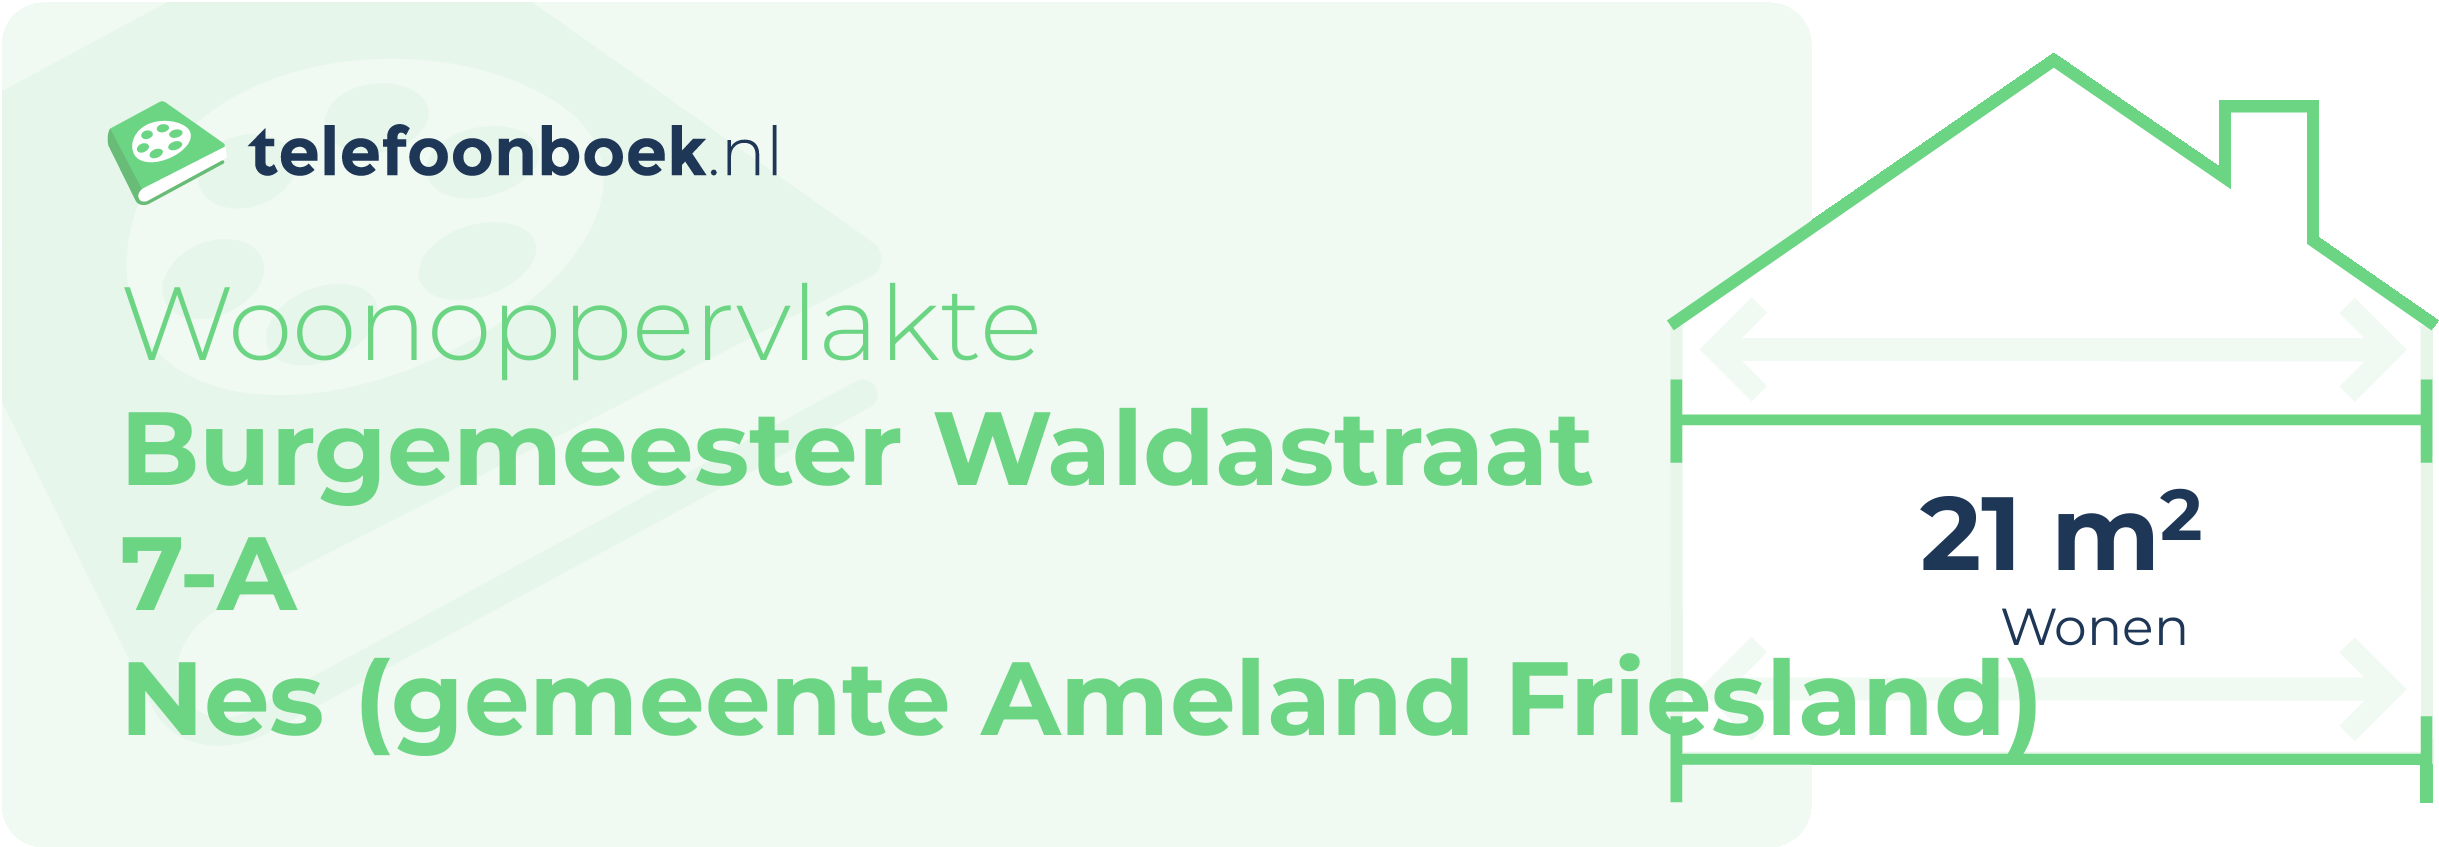 Woonoppervlakte Burgemeester Waldastraat 7-A Nes (gemeente Ameland Friesland)